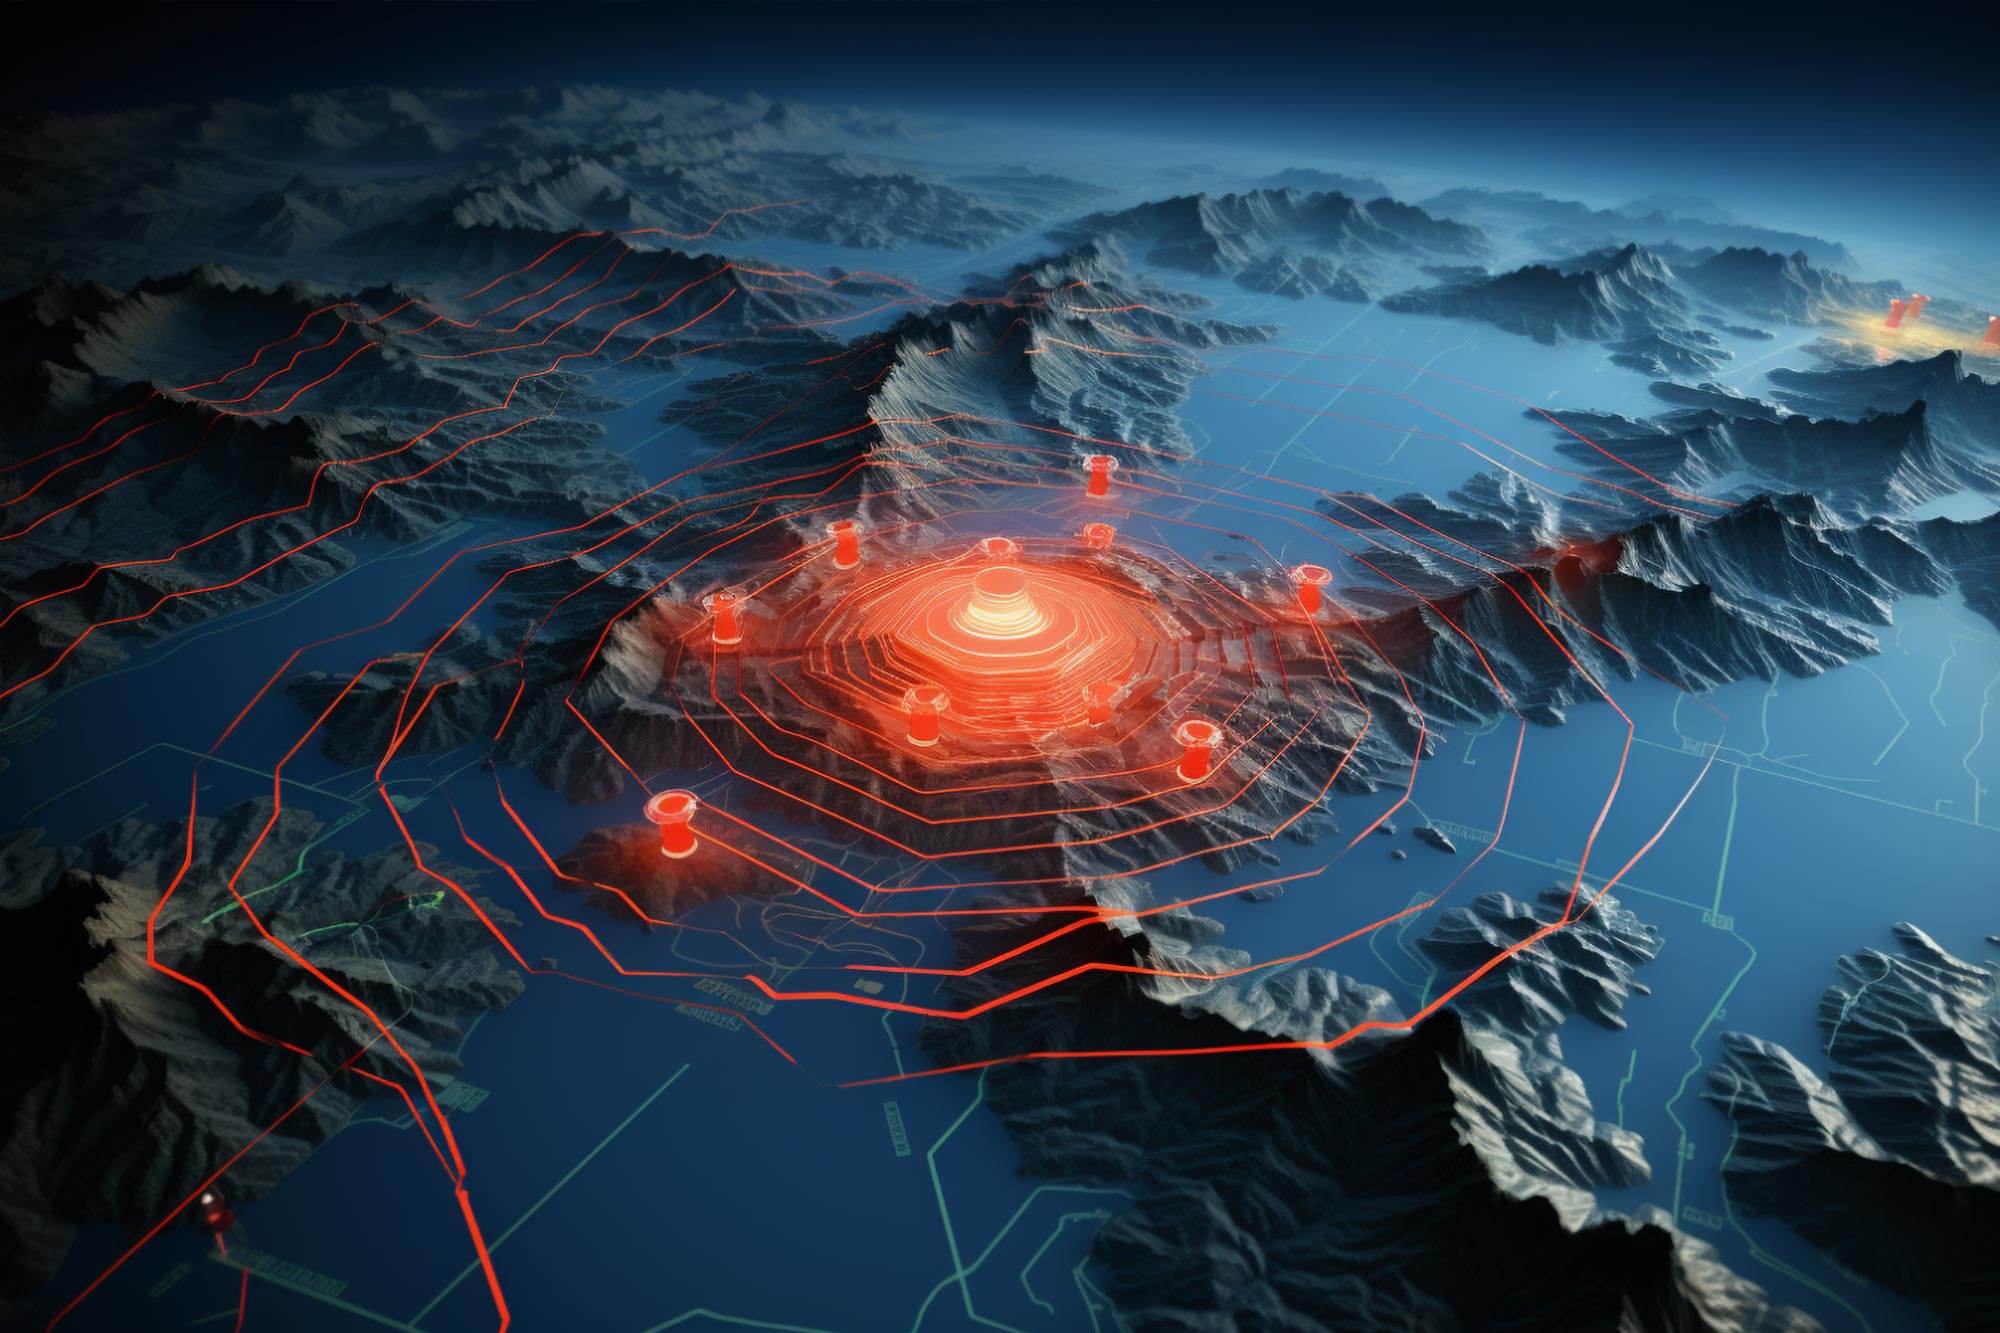 Datele GPS pot detecta cutremure mari cu câteva ore înainte ca acestea să aibă loc